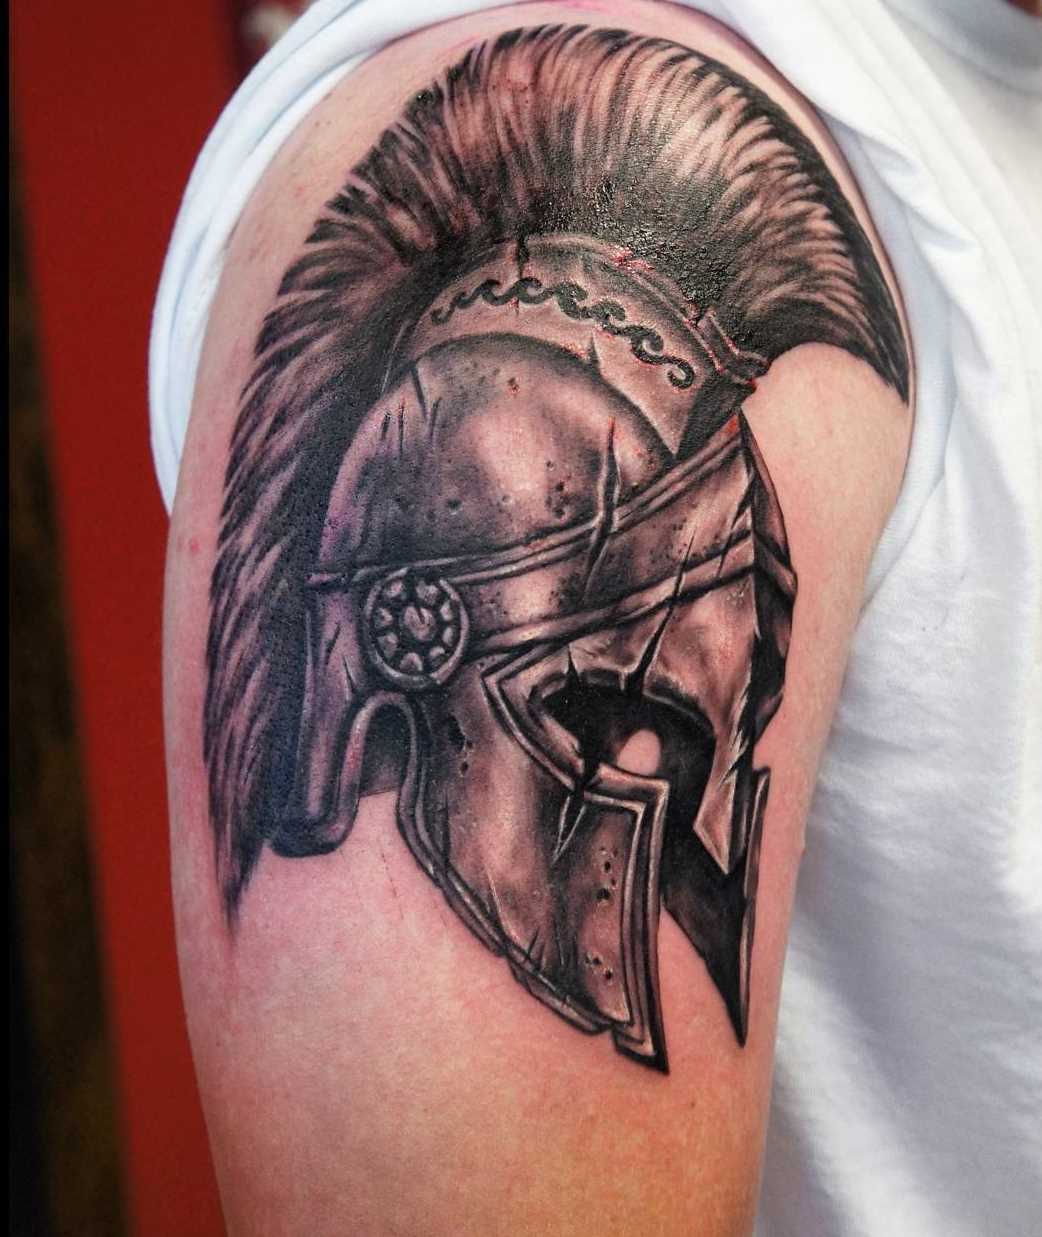 A tatuagem do capacete spartan no ombro do cara